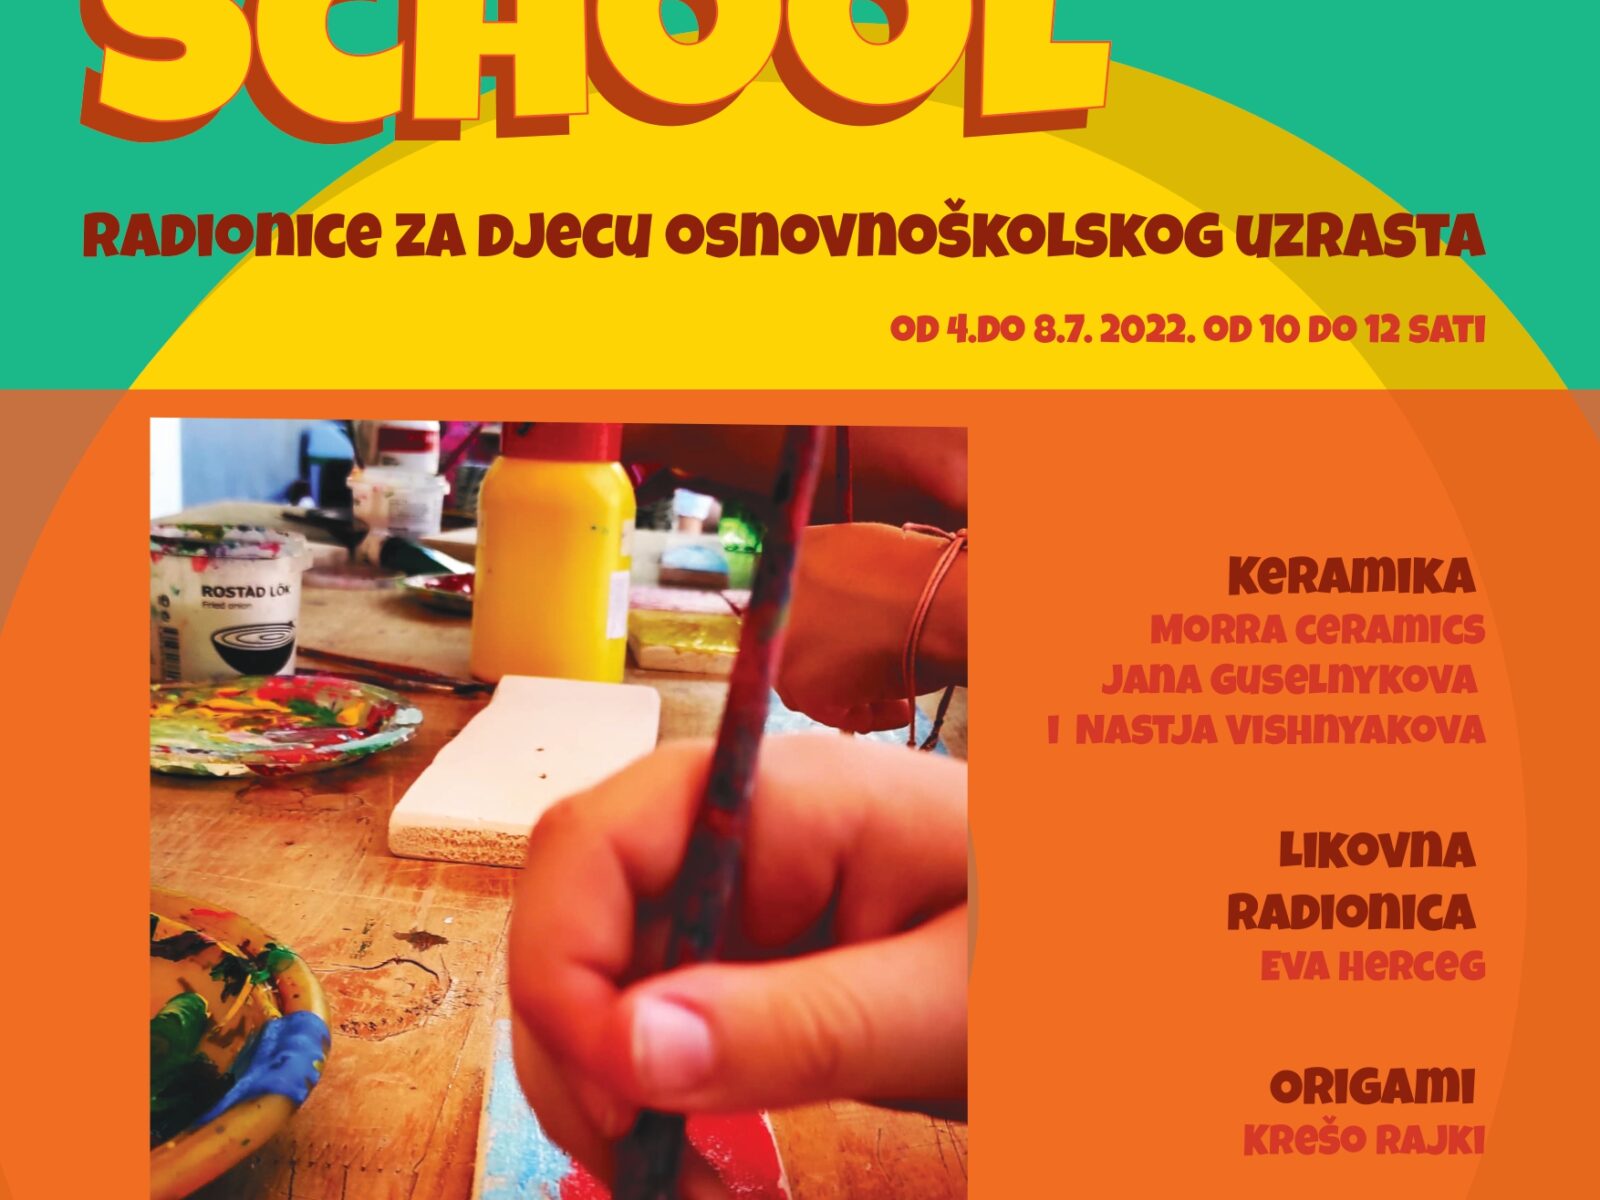 COOL SCHOOL – ljetne praznične radionice za djecu